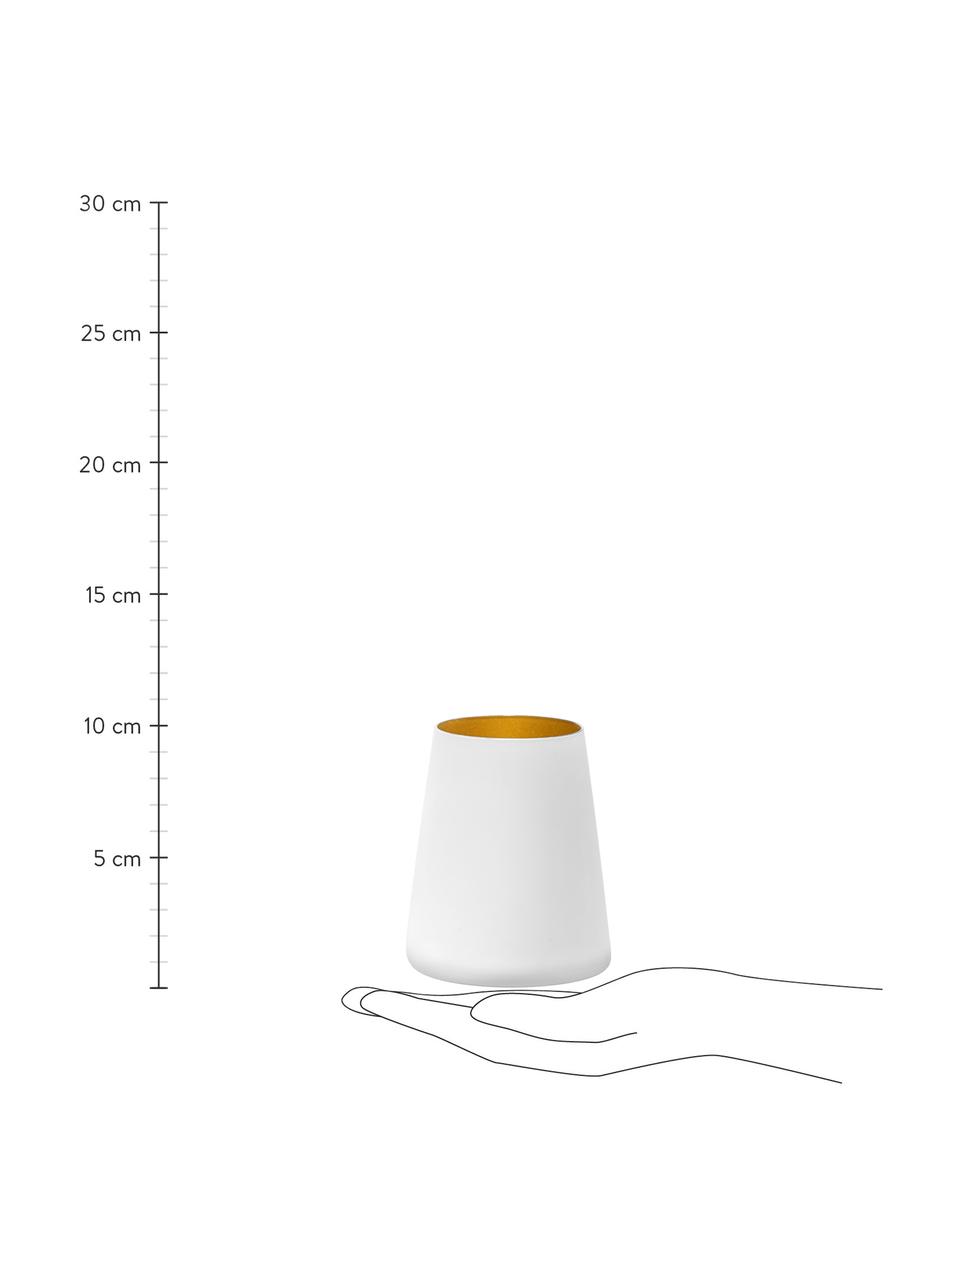 Kegelförmige Kristall-Cocktailgläser Power in Weiß/Gold, 6 Stück, Kristallglas, beschichtet, Weiß, Goldfarben, Ø 9 x H 10 cm, 380 ml